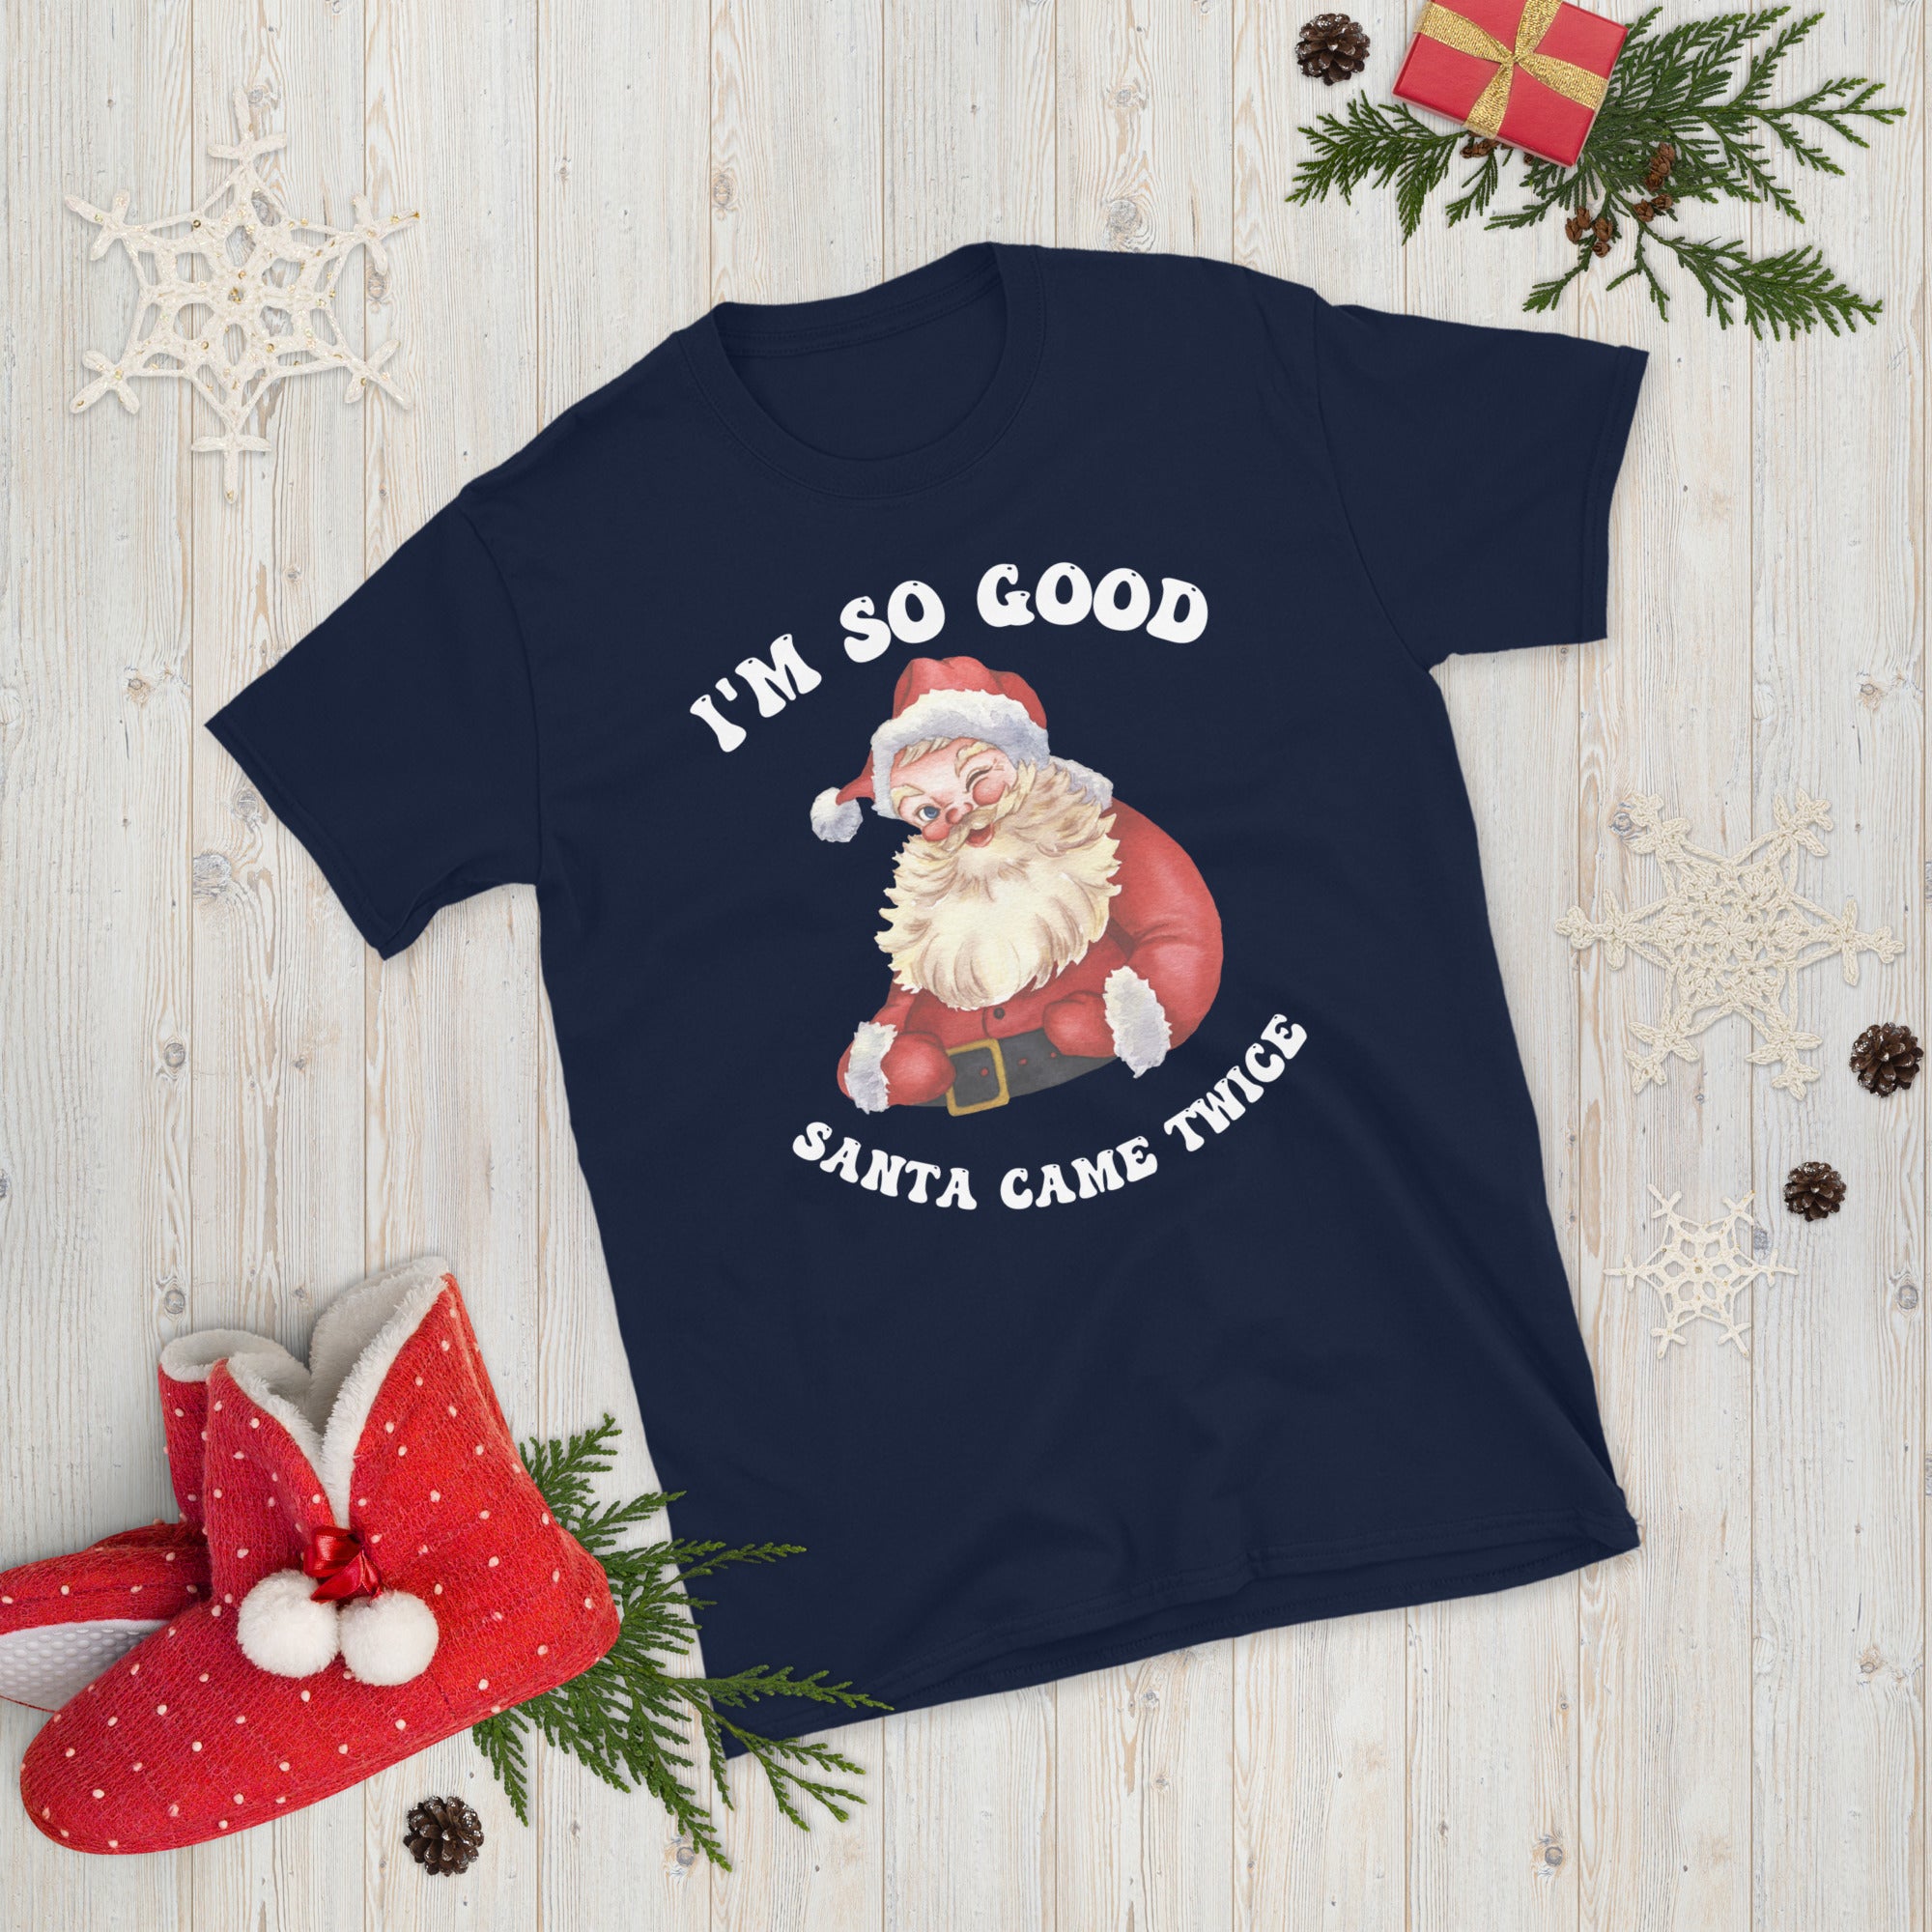 Naughty Couple Christmas Shirts, I&#39;m So Good Santa Came Twice Shirt, Couples Ugly Christmas Tees, Groovy Christmas Gifts, Xmas Adult Humour